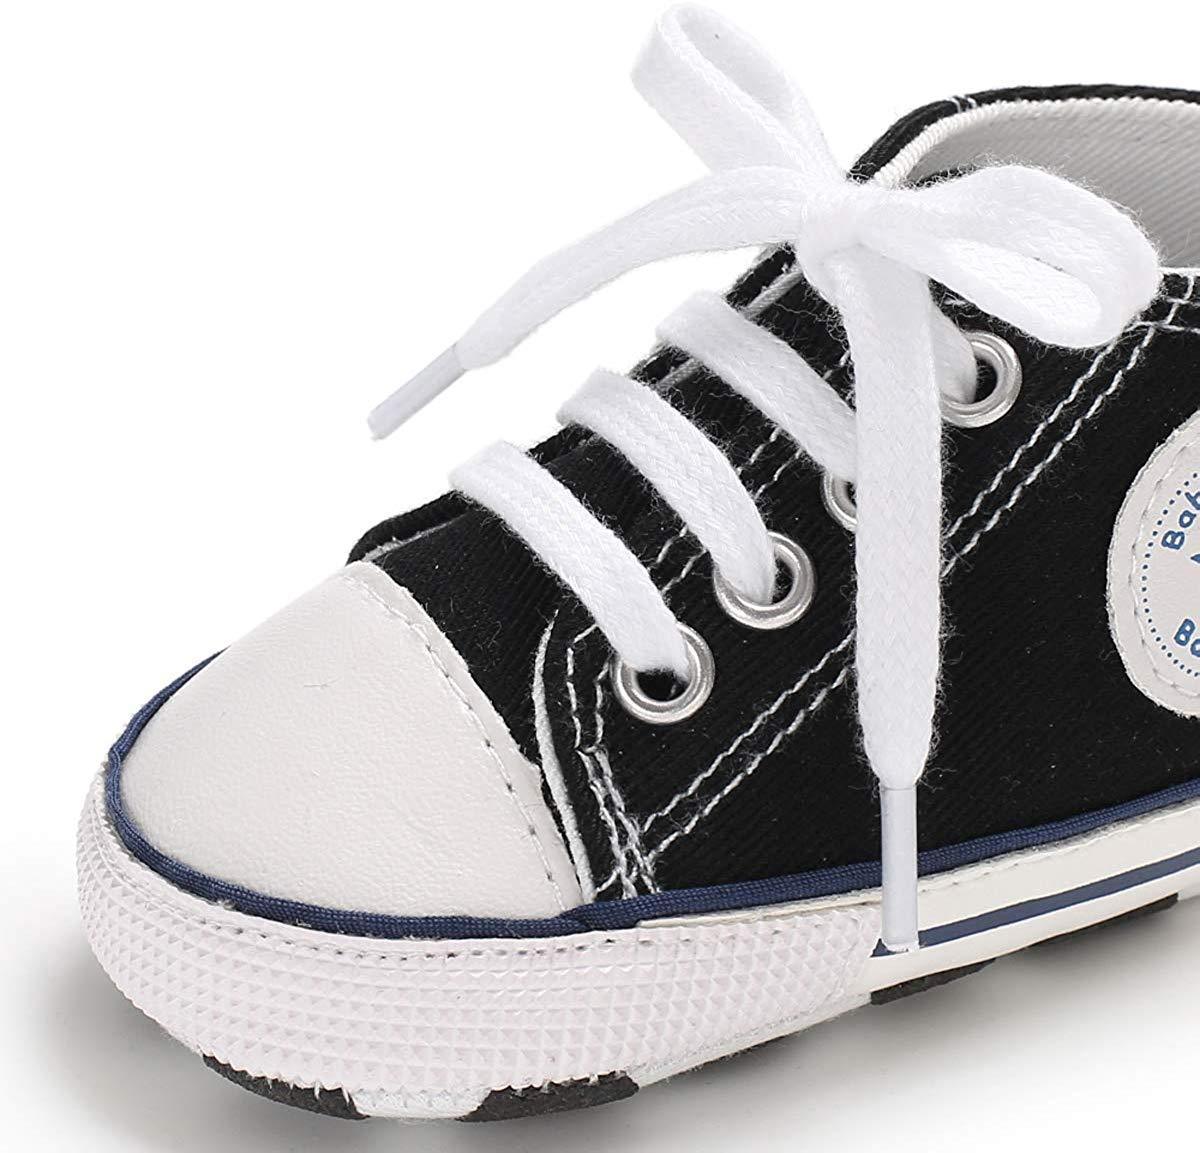 Bebê meninos meninas estrela tênis de cano alto macio antiderrapante primeiros caminhantes sapatos jeans